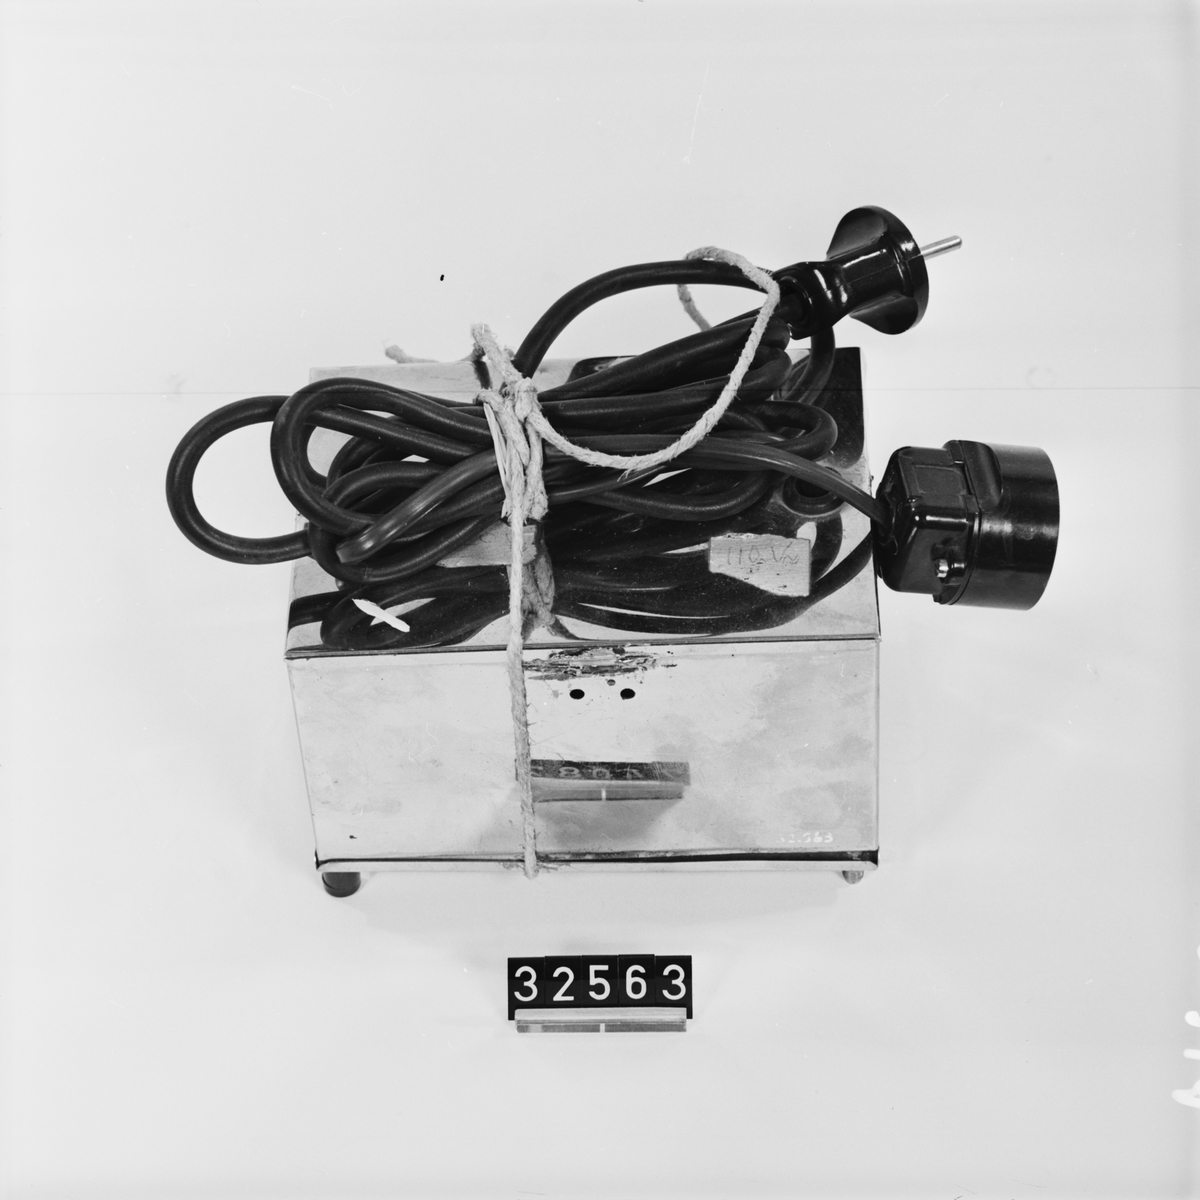 Apparaten är byggd i en pegamoidklädd trälåda med högtalaren placerad i ena kortsidan 100 W.
Tillbehör: En talmikrofon (Webster) , transformator  (110-220 V) med anslutningsledningar, en skarvledning, ett rör samt en kontakt.